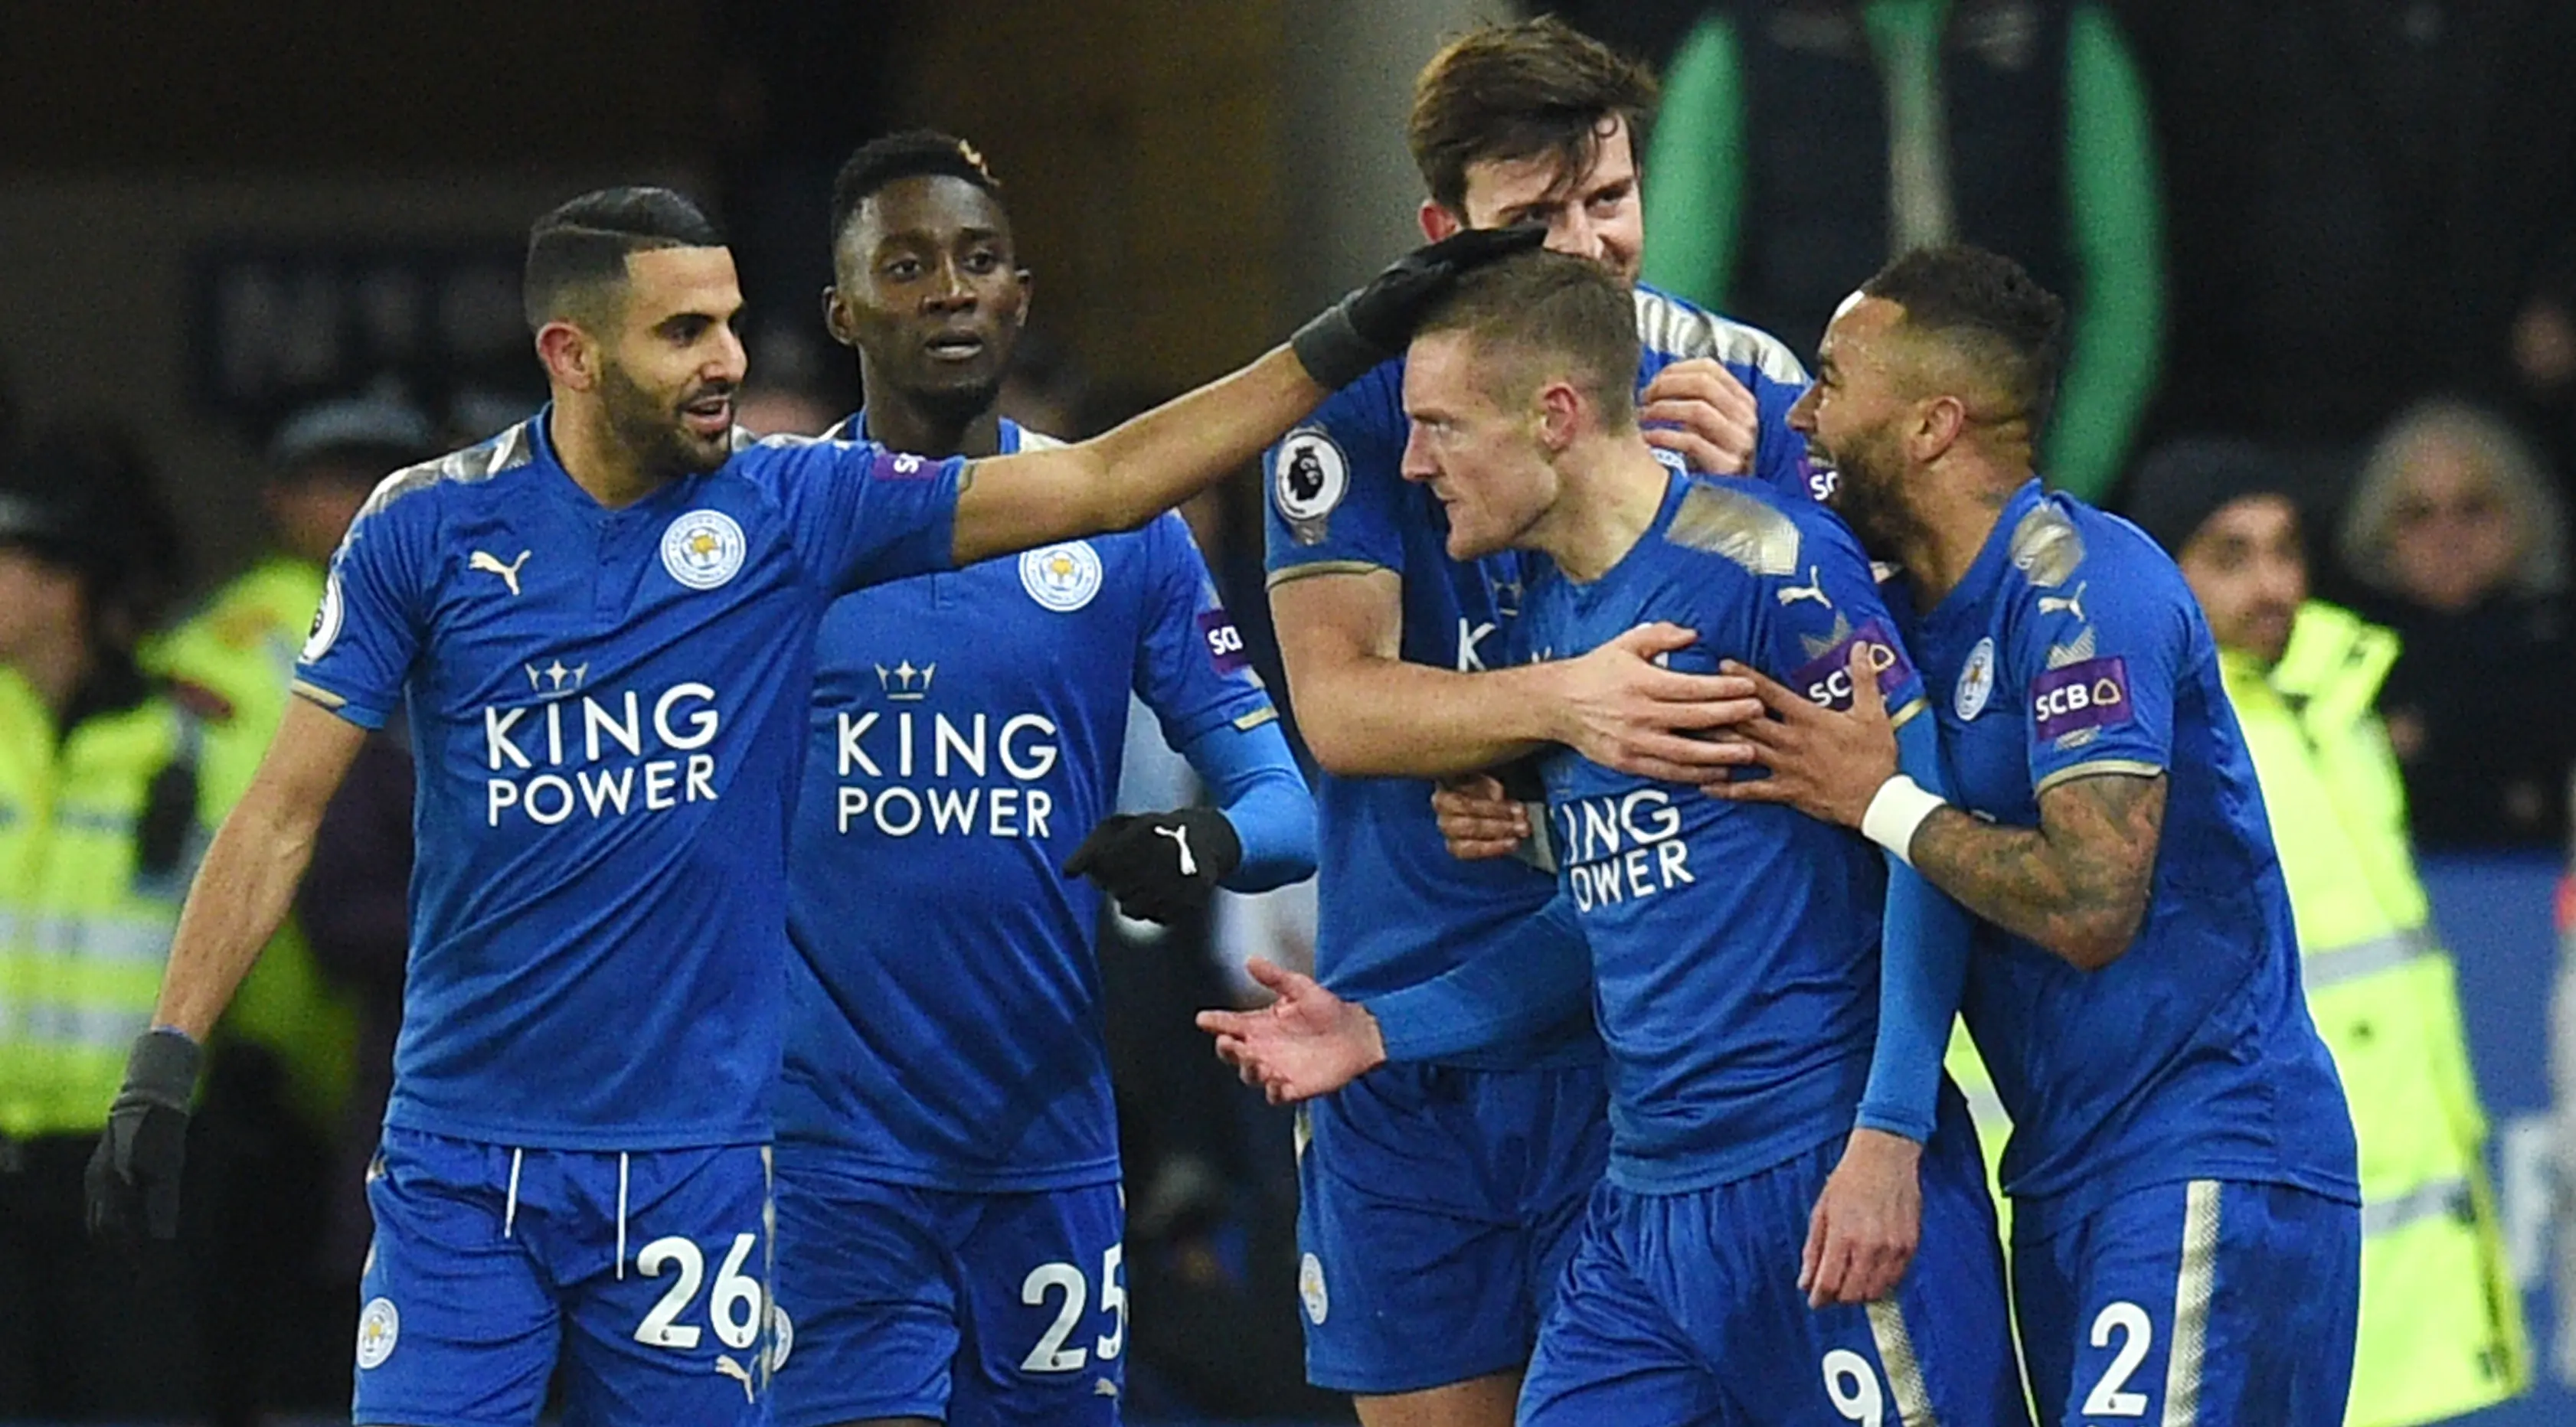 Kehebatan Leicester City jadi juara Liga Inggris musim 2015/16 tercoreng (OLI SCARFF/AFP)